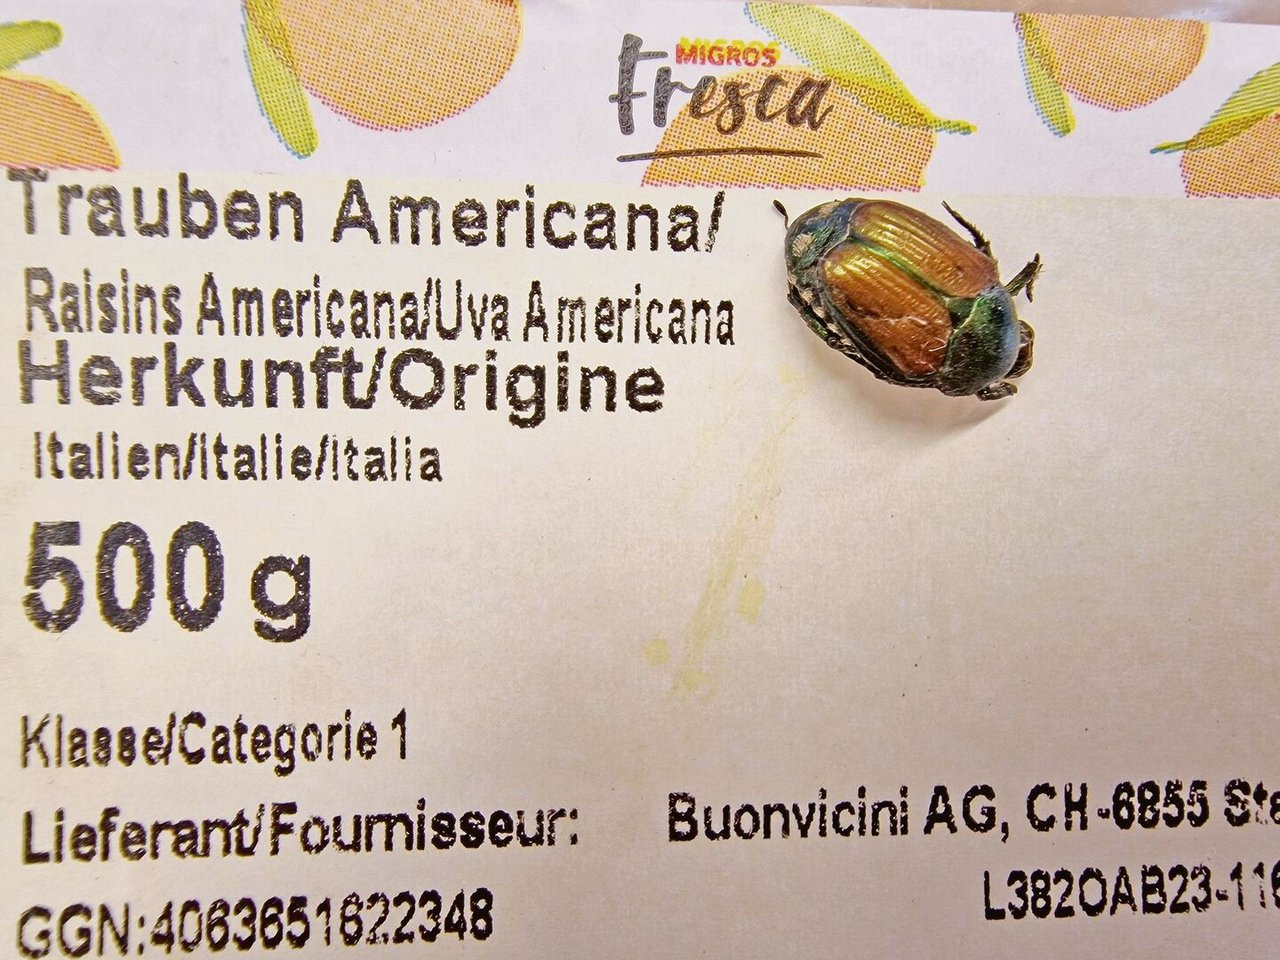 Gemäss BLW kommt es öfters vor, dass Japankäfer in Früchten aus Italien durch die Alpen mitreisen. 